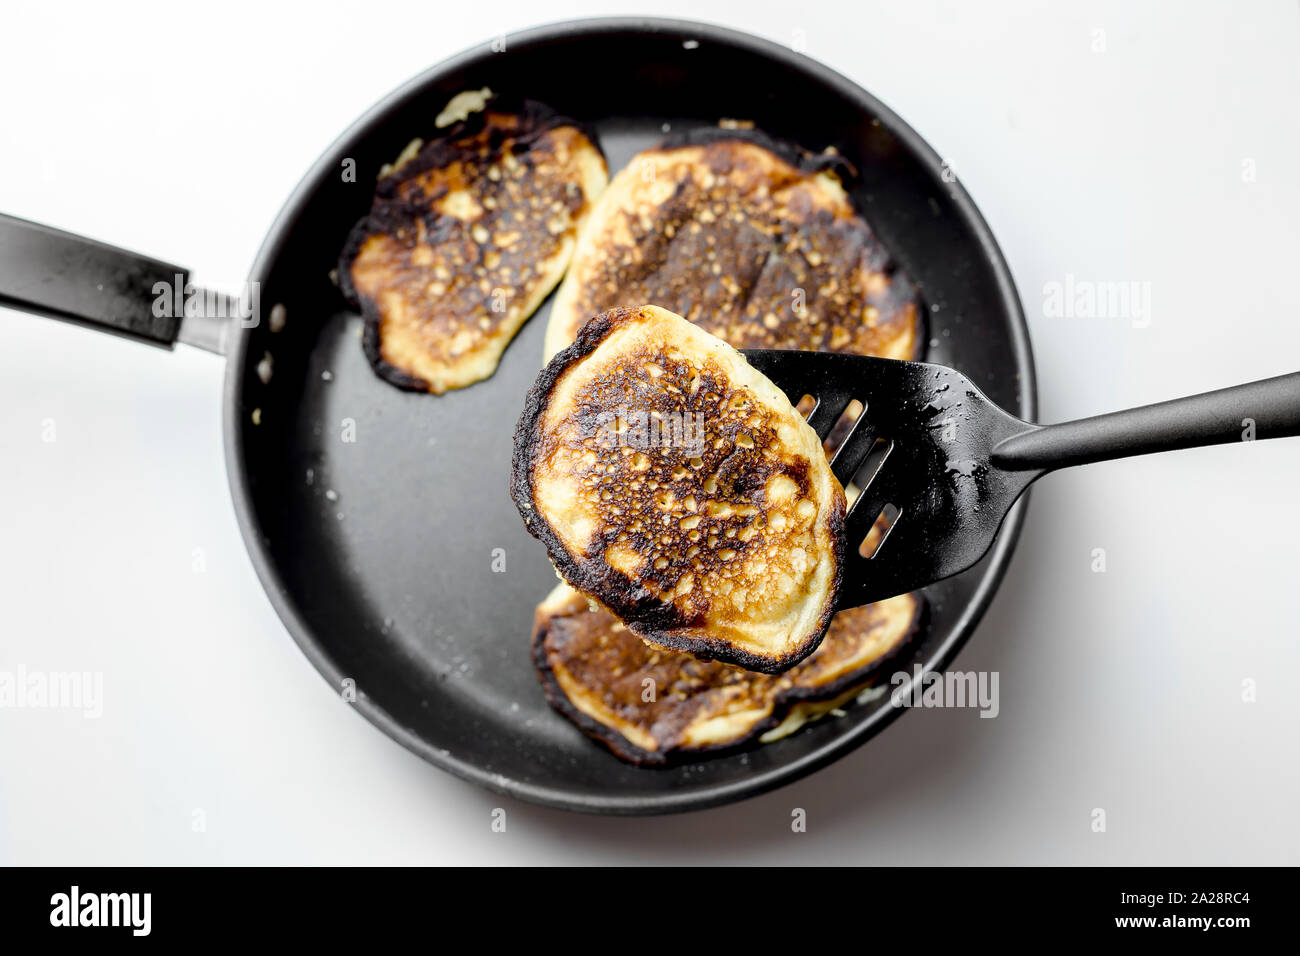 Kochen ist fehlgeschlagen, verbrannte Pfannkuchen auf einer schwarzen Pan, ein Pfannkuchen auf einer Spachtel. Stockfoto